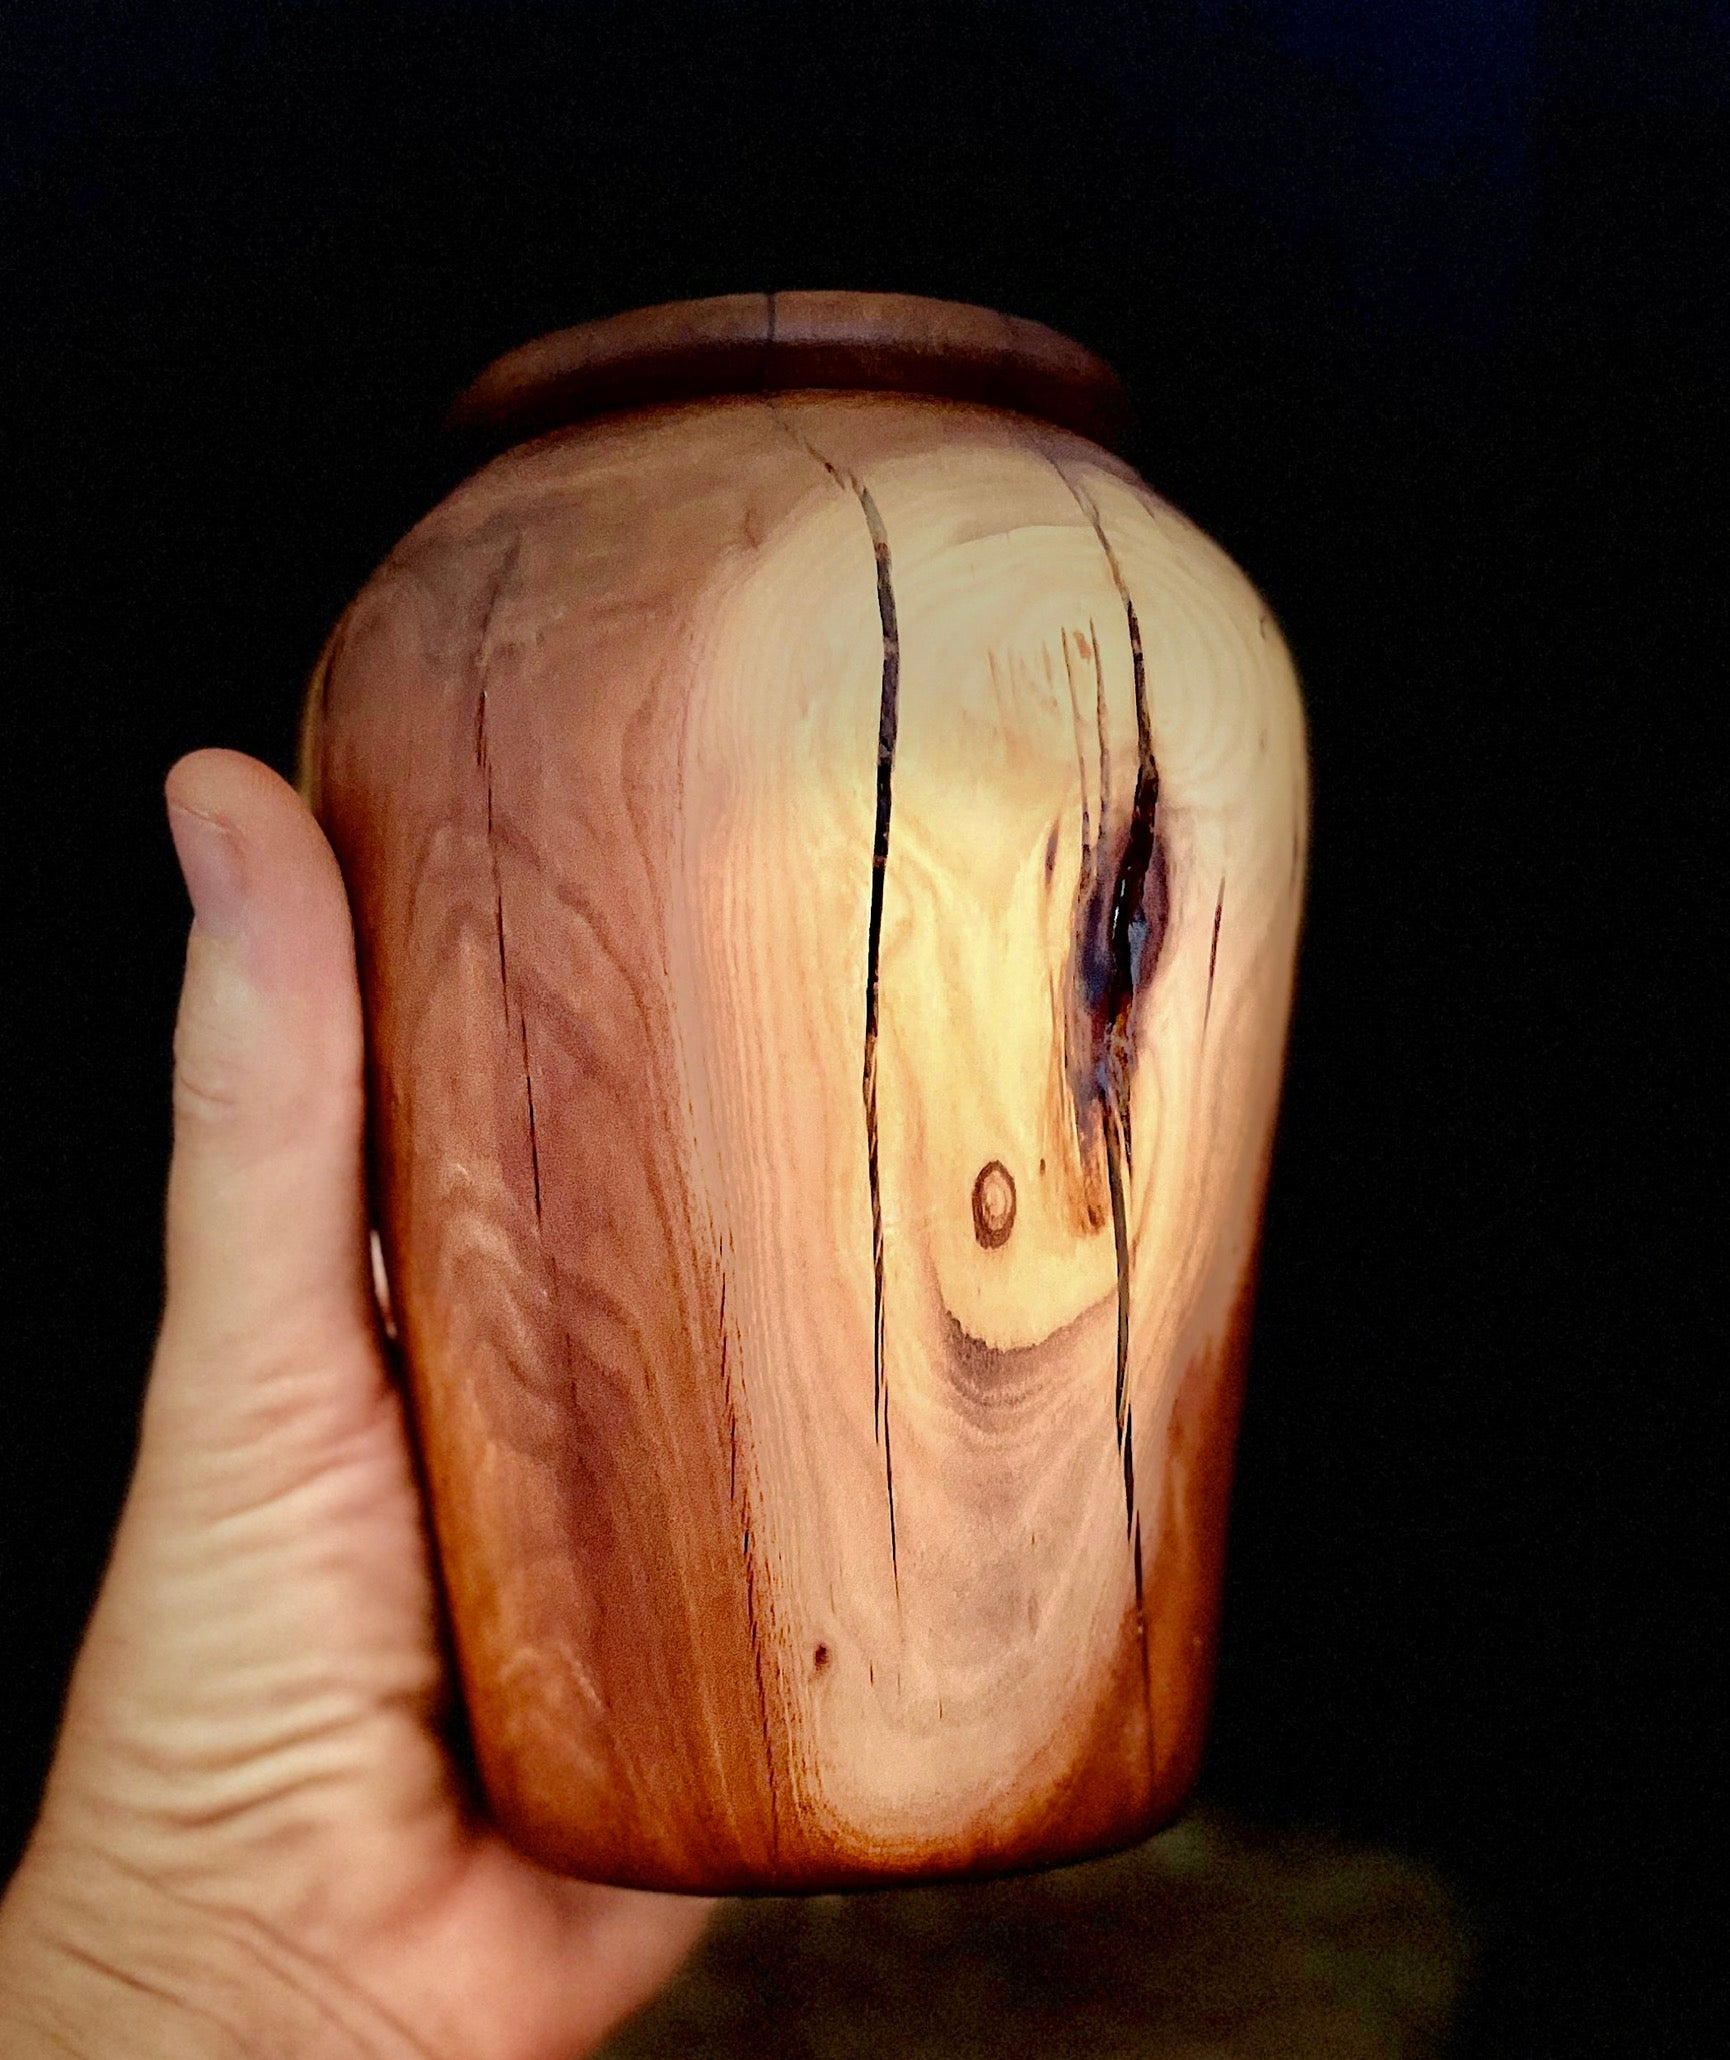 Manzanita Wood Rustic Vase